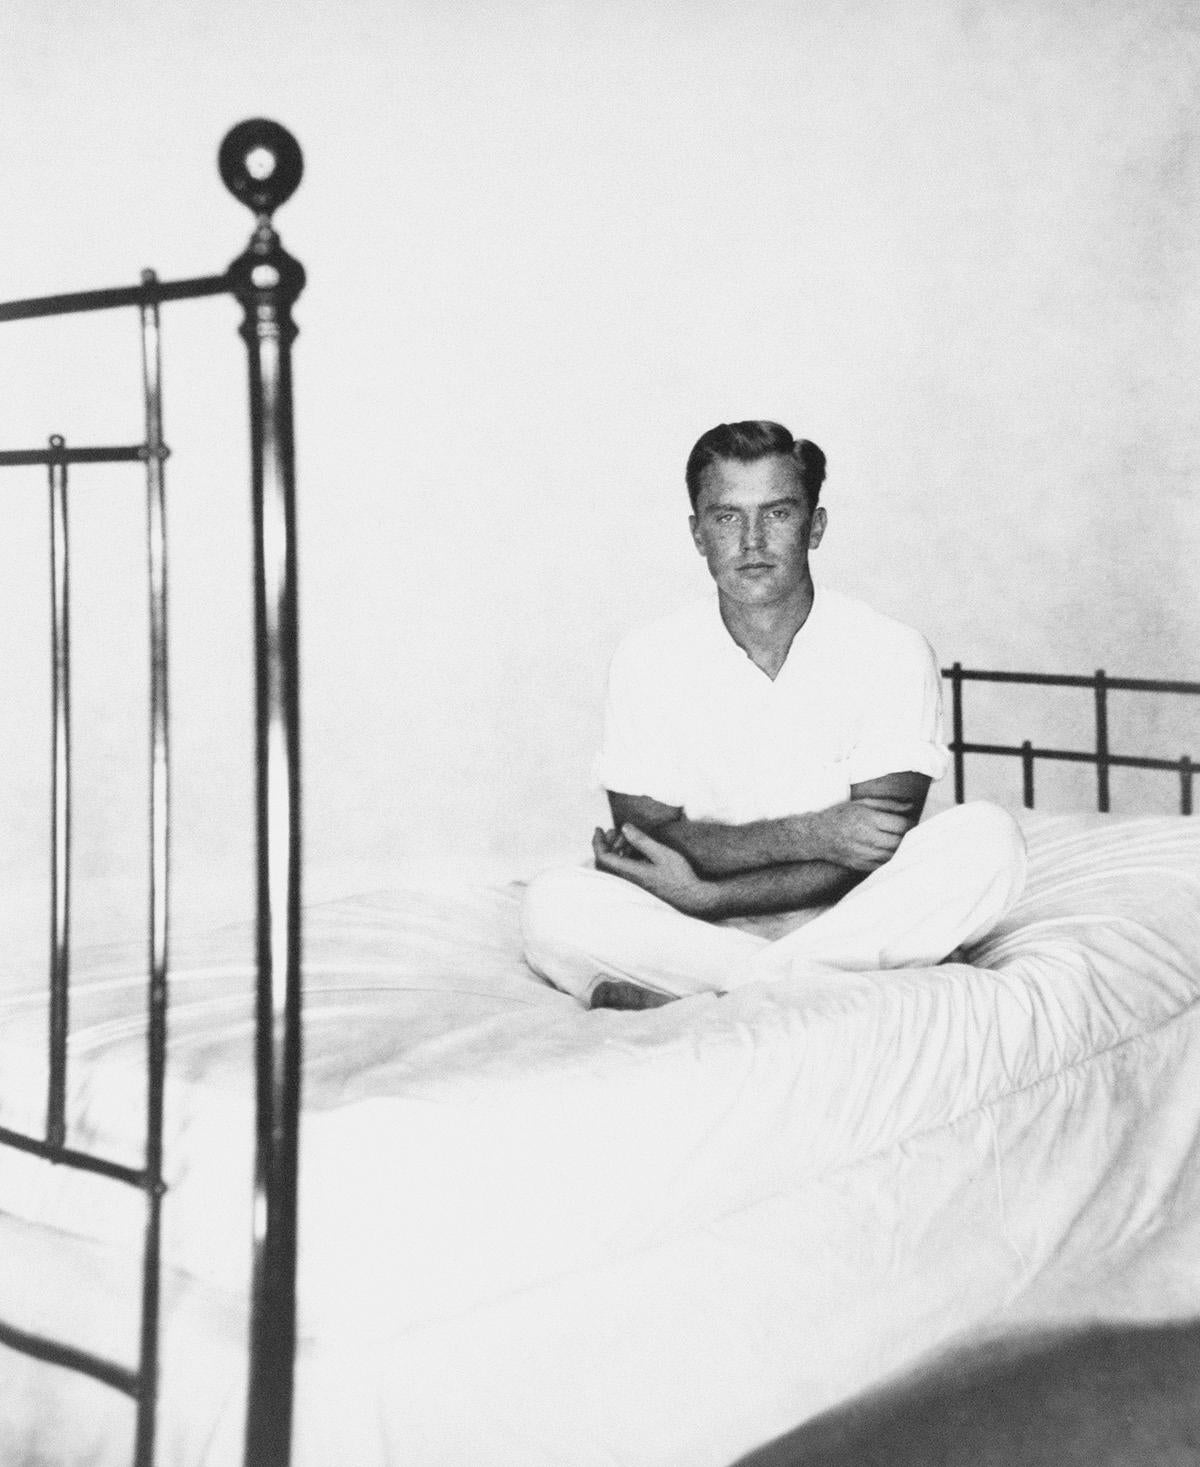 Porträt von Alexander Jensen „ Yow auf Bett“ – Photograph von George Platt Lynes